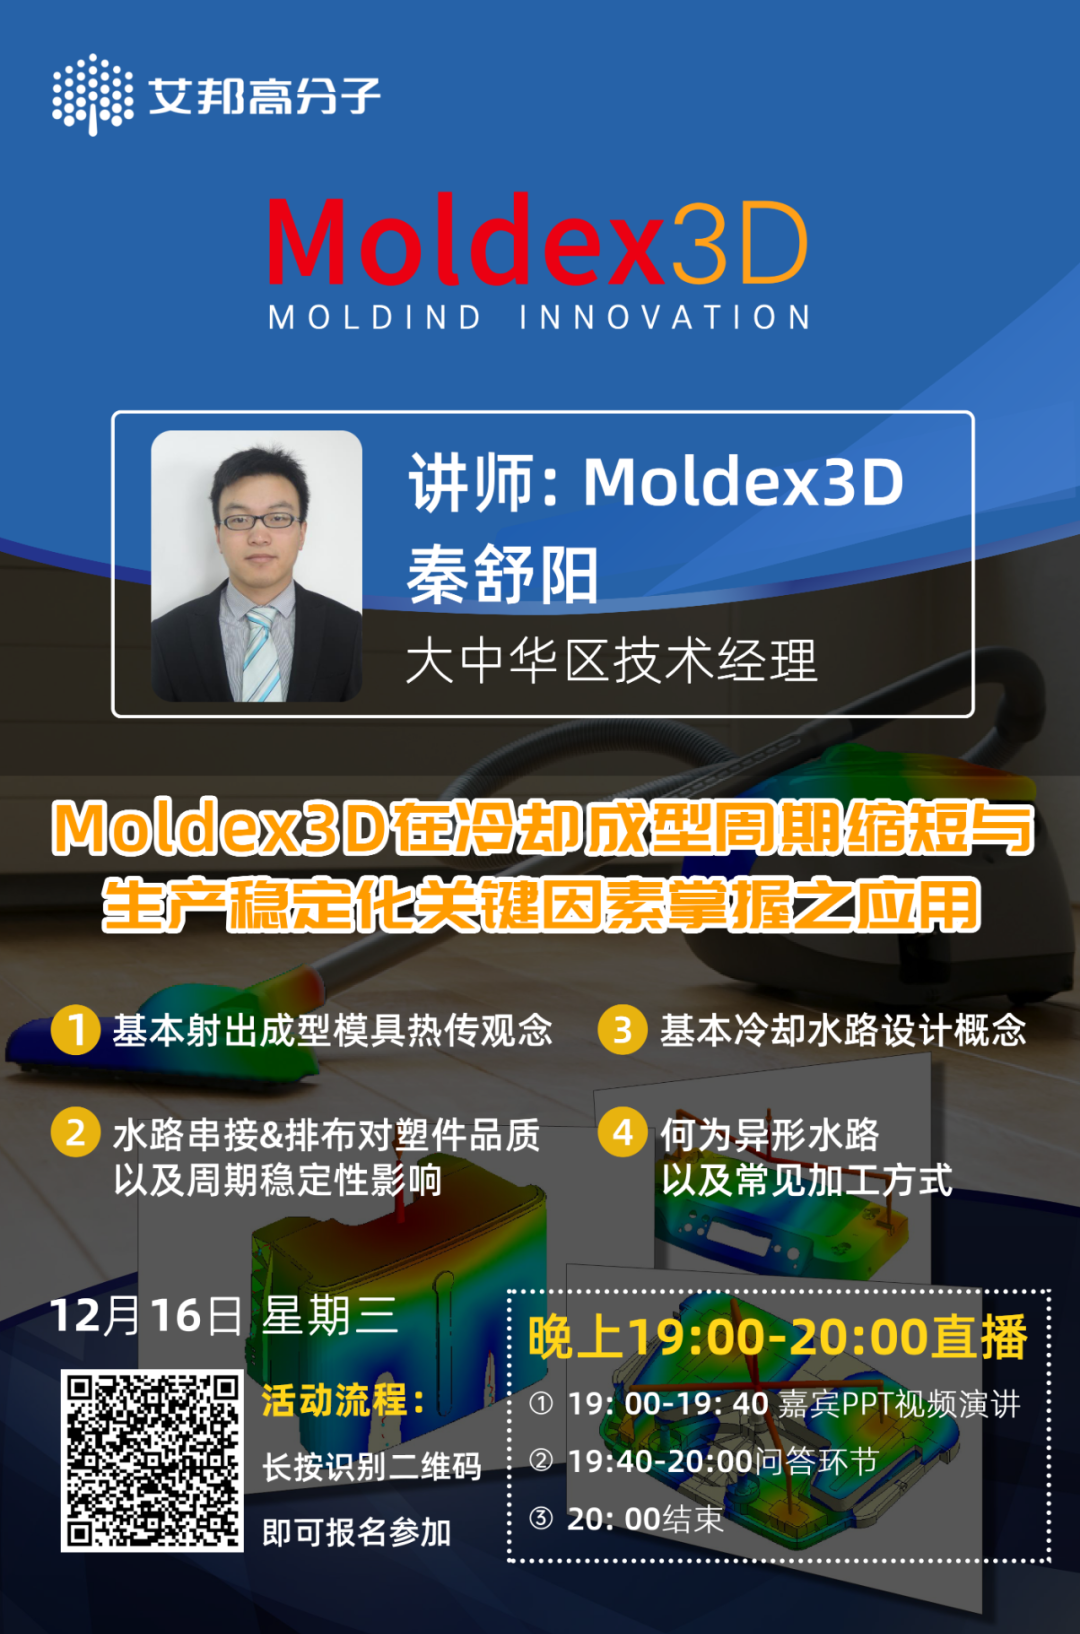 直播预告：12月16日晚7点Moldex3D在冷却成型周期缩短与生产稳定化关键因素掌握之应用